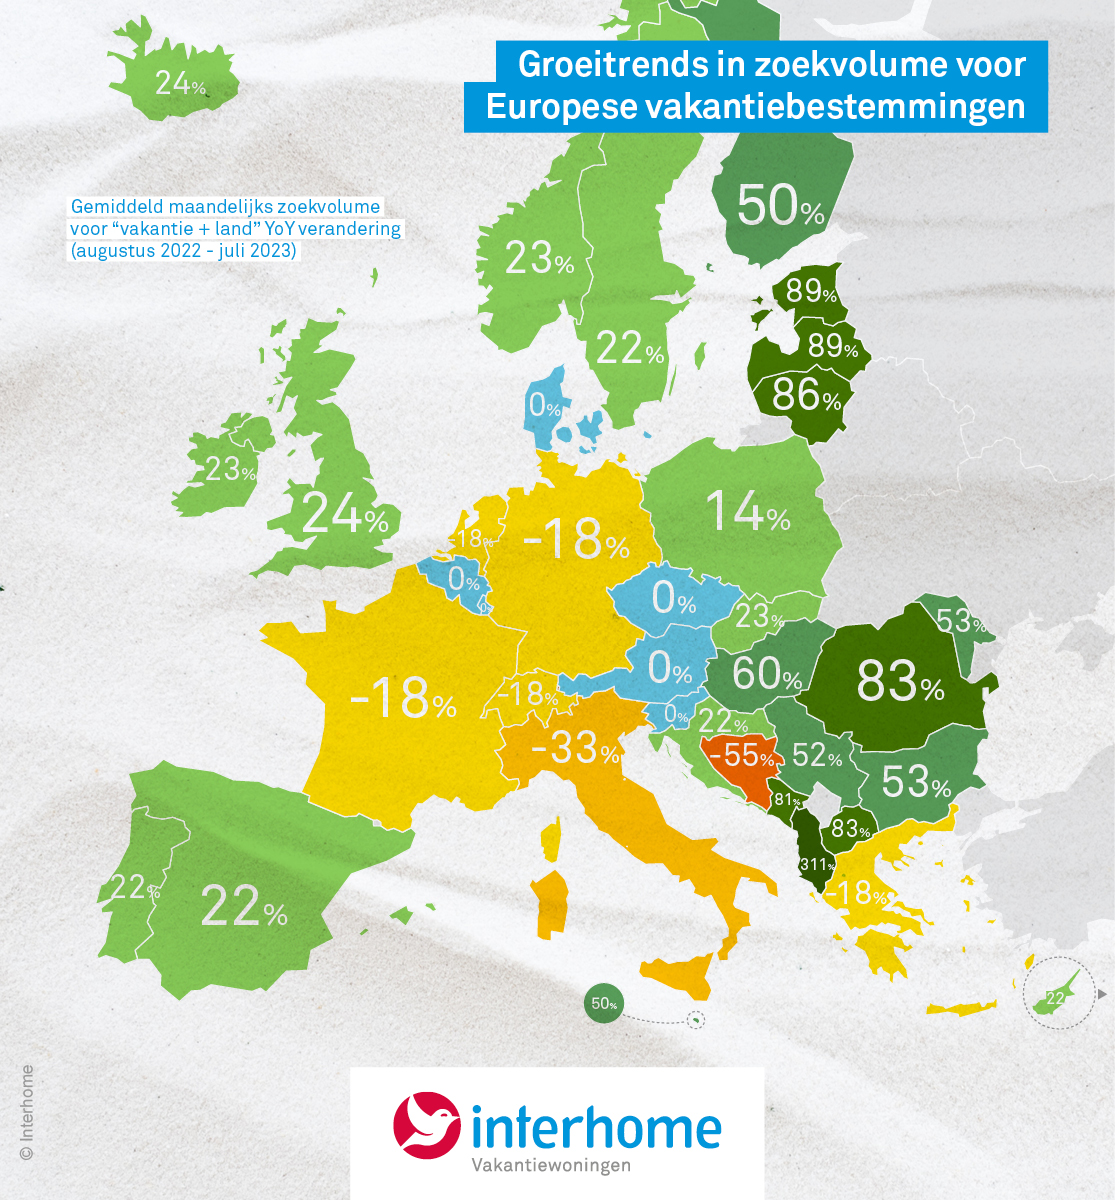 groeitrends in zoekwolume voor europese vakantiebestemmingen-nederlanders